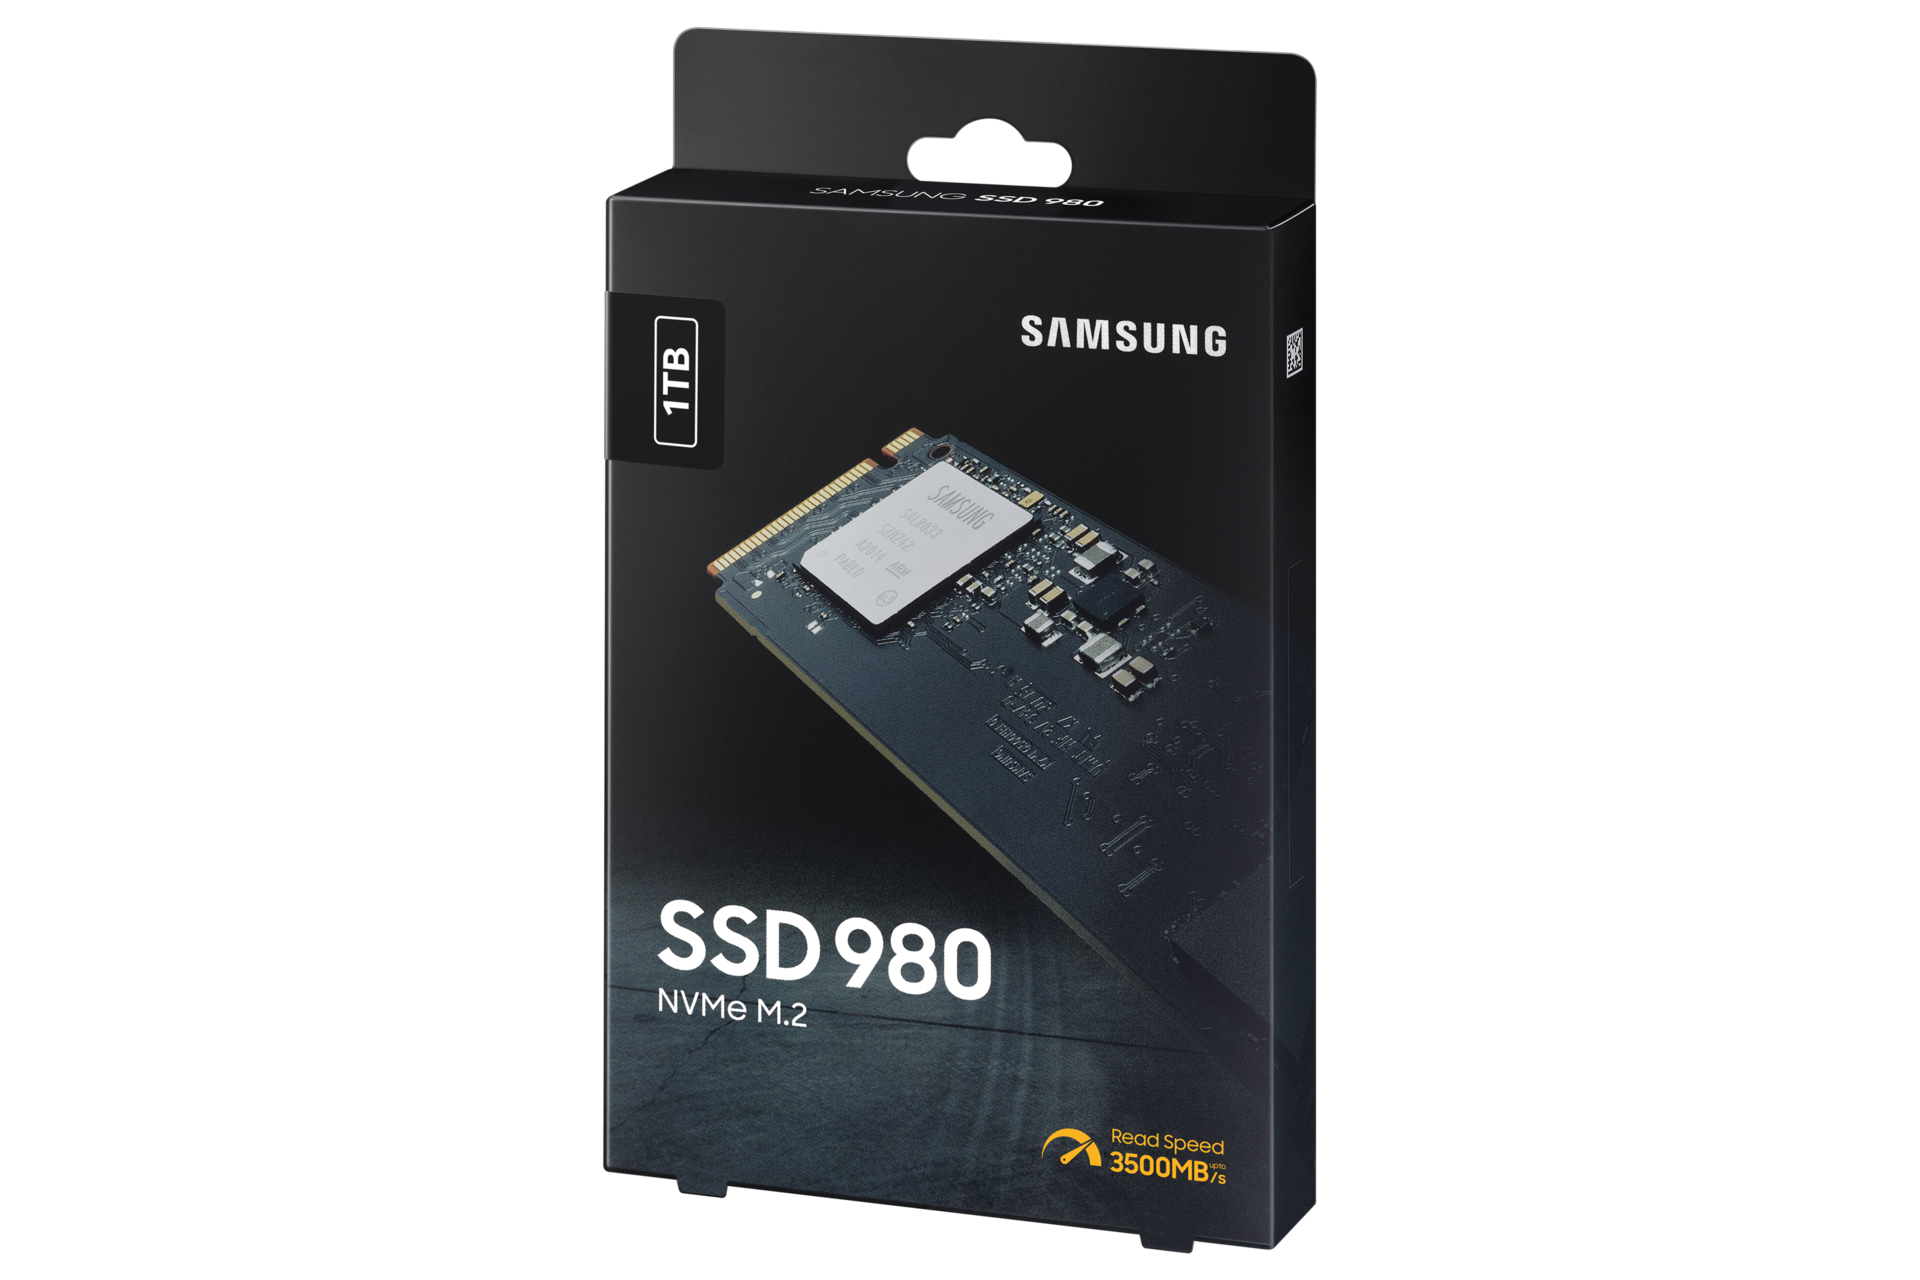 Samsung 980 500gb. SSD Samsung 980 250gb. Samsung 980 500gb MZ-v8v500bw. SSD Samsung 980 NVME M.2. SSD Samsung 980 250gb MZ-v8v250bw.